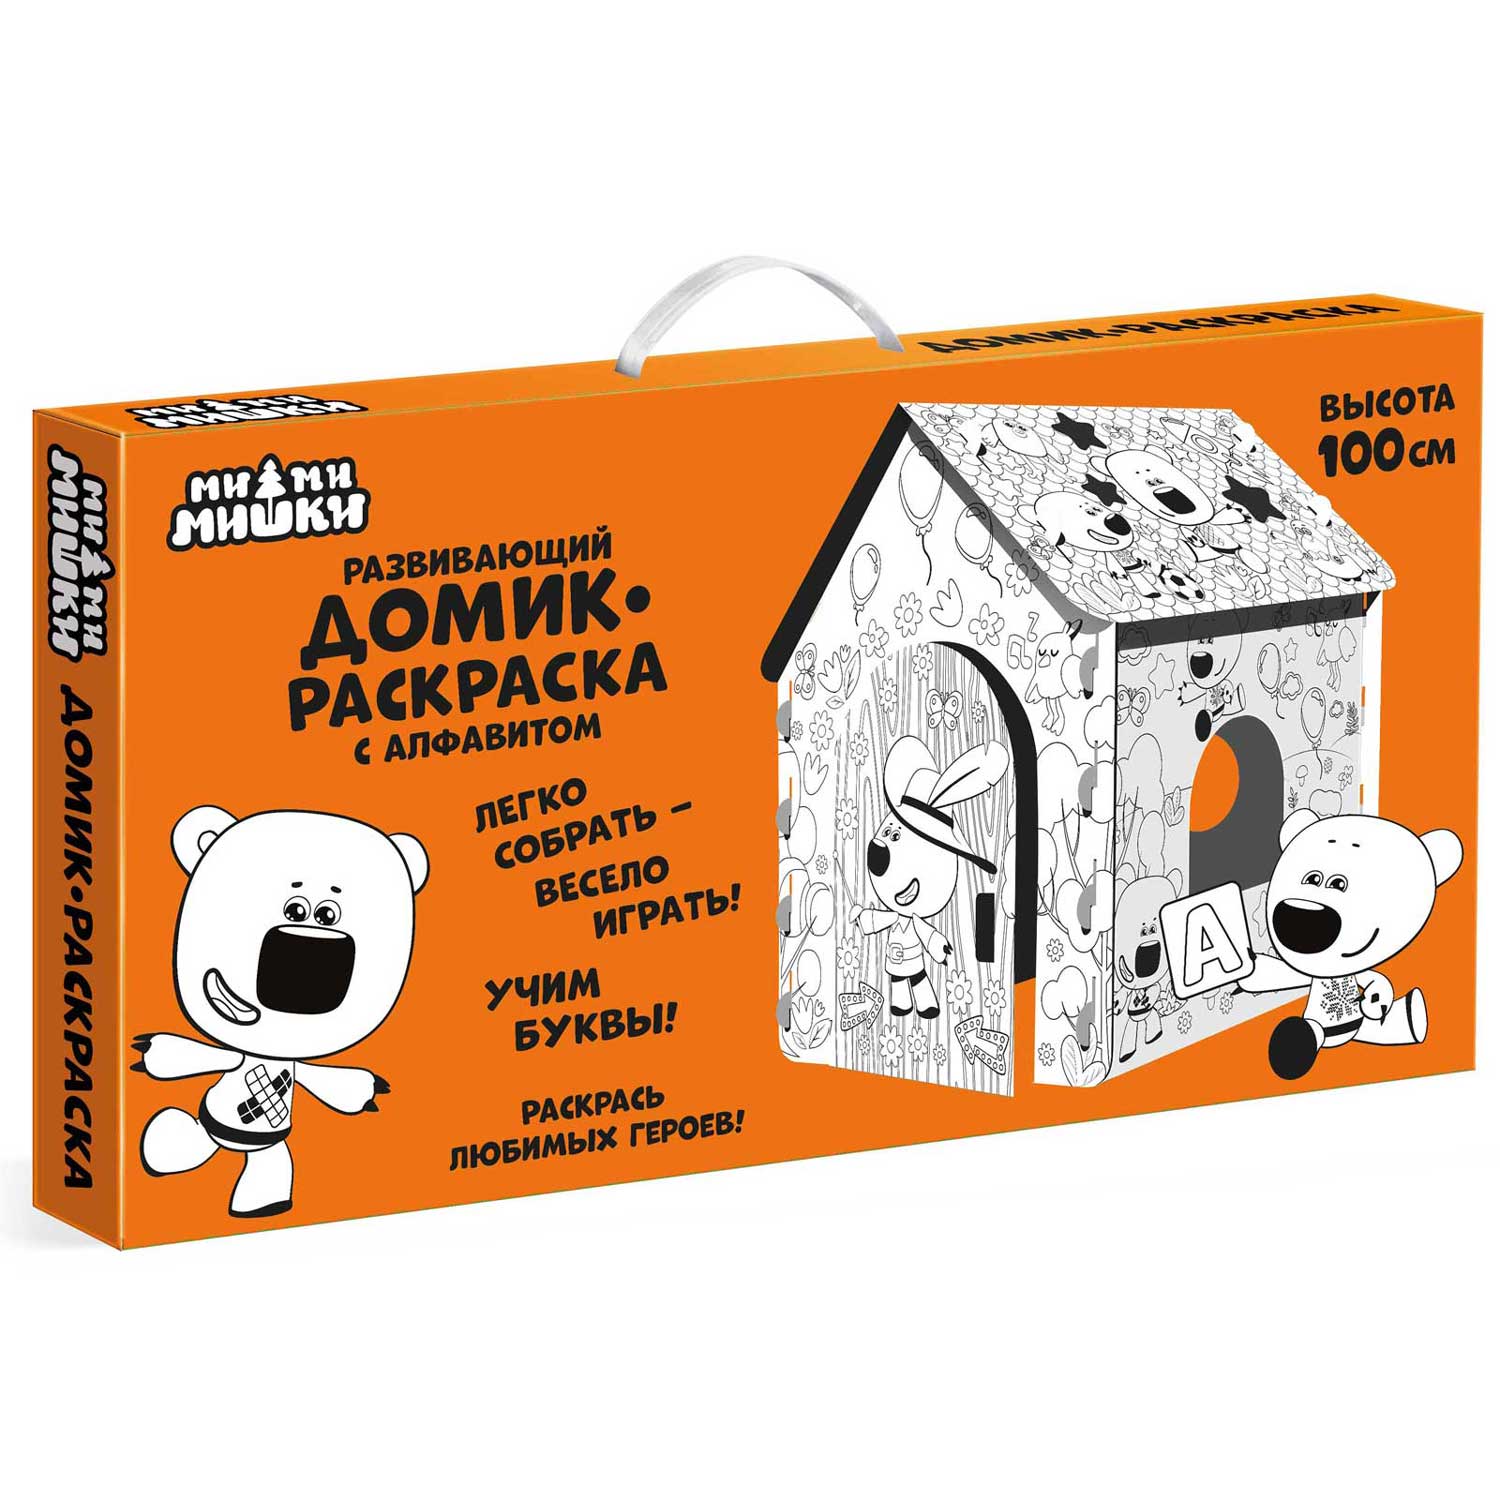 Домик Ми-Ми-Мишки картонный для раскрашивания с алфавитом - фото 4